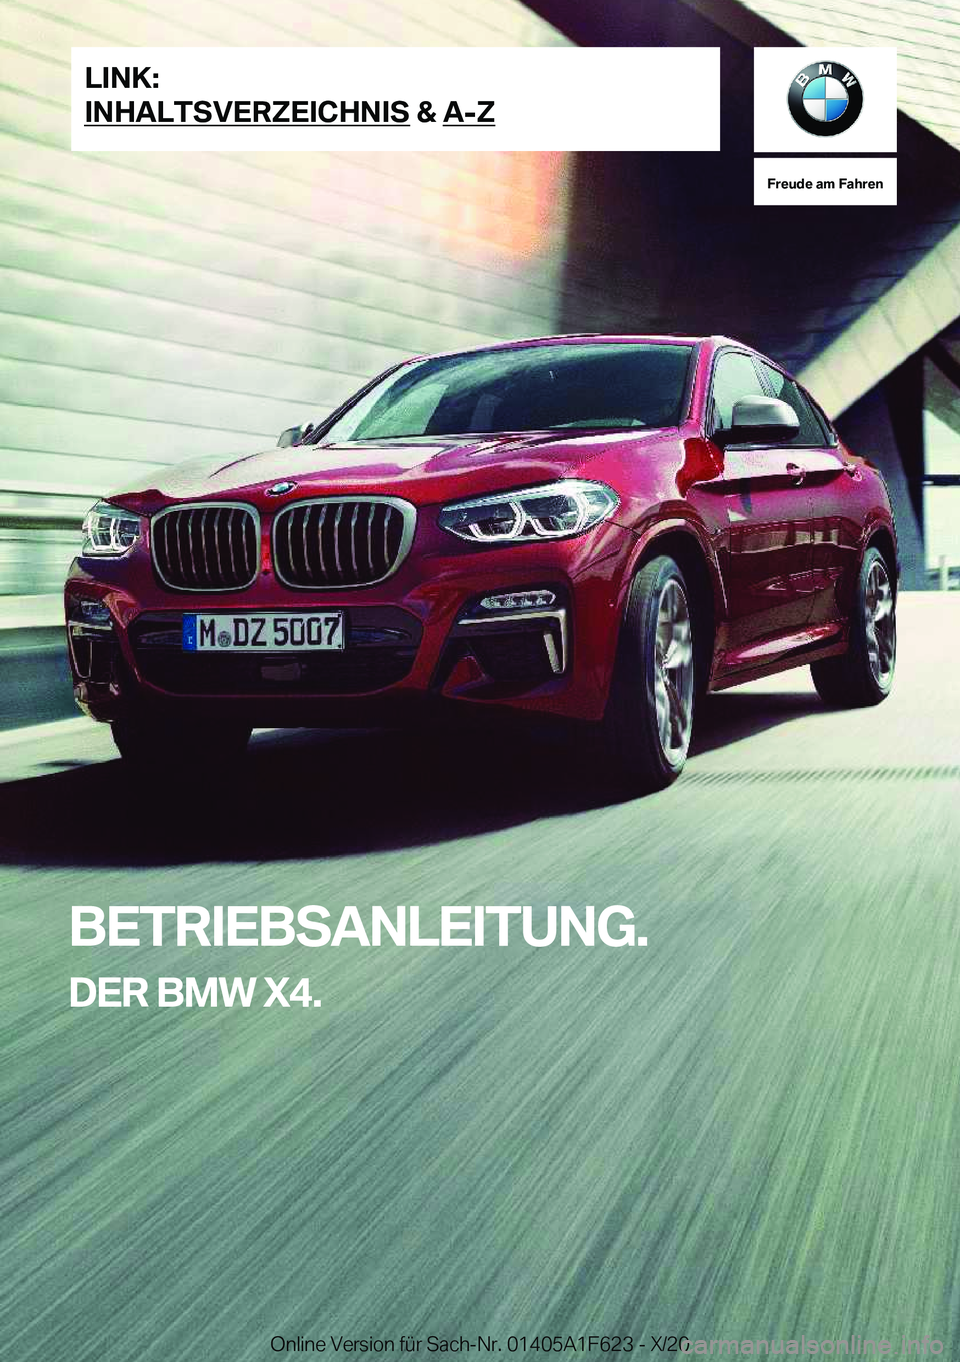 BMW X4 2021  Betriebsanleitungen (in German) �F�r�e�u�d�e��a�m��F�a�h�r�e�n
�B�E�T�R�I�E�B�S�A�N�L�E�I�T�U�N�G�.�D�E�R��B�M�W��X�4�.�L�I�N�K�:
�I�N�H�A�L�T�S�V�E�R�Z�E�I�C�H�N�I�S��&��A�-�Z�O�n�l�i�n�e��V�e�r�s�i�o�n��f�